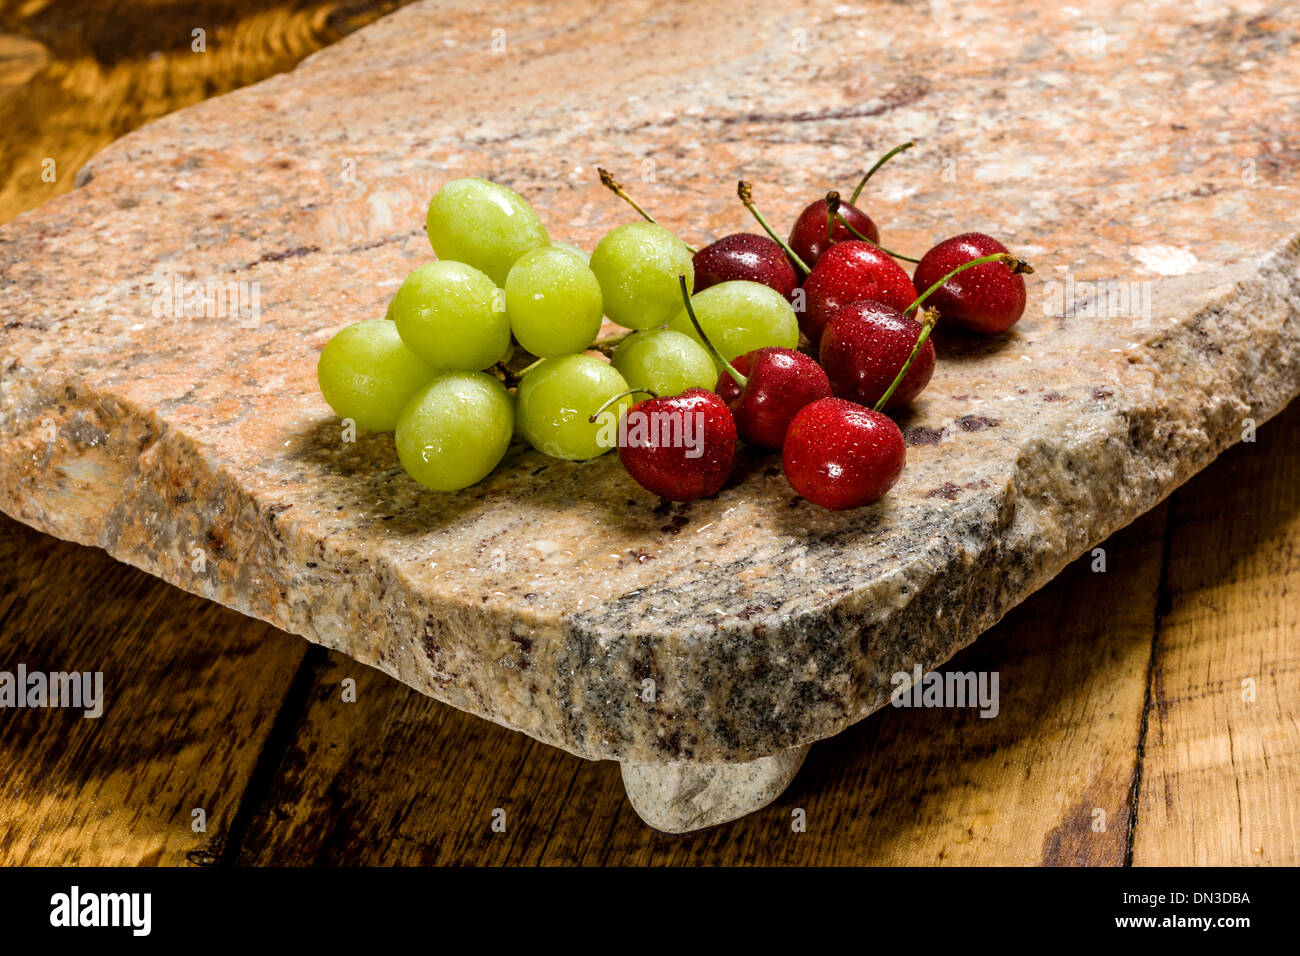 Les fruits, les raisins et les cerises, sur une dalle de granit recyclé servant. Banque D'Images